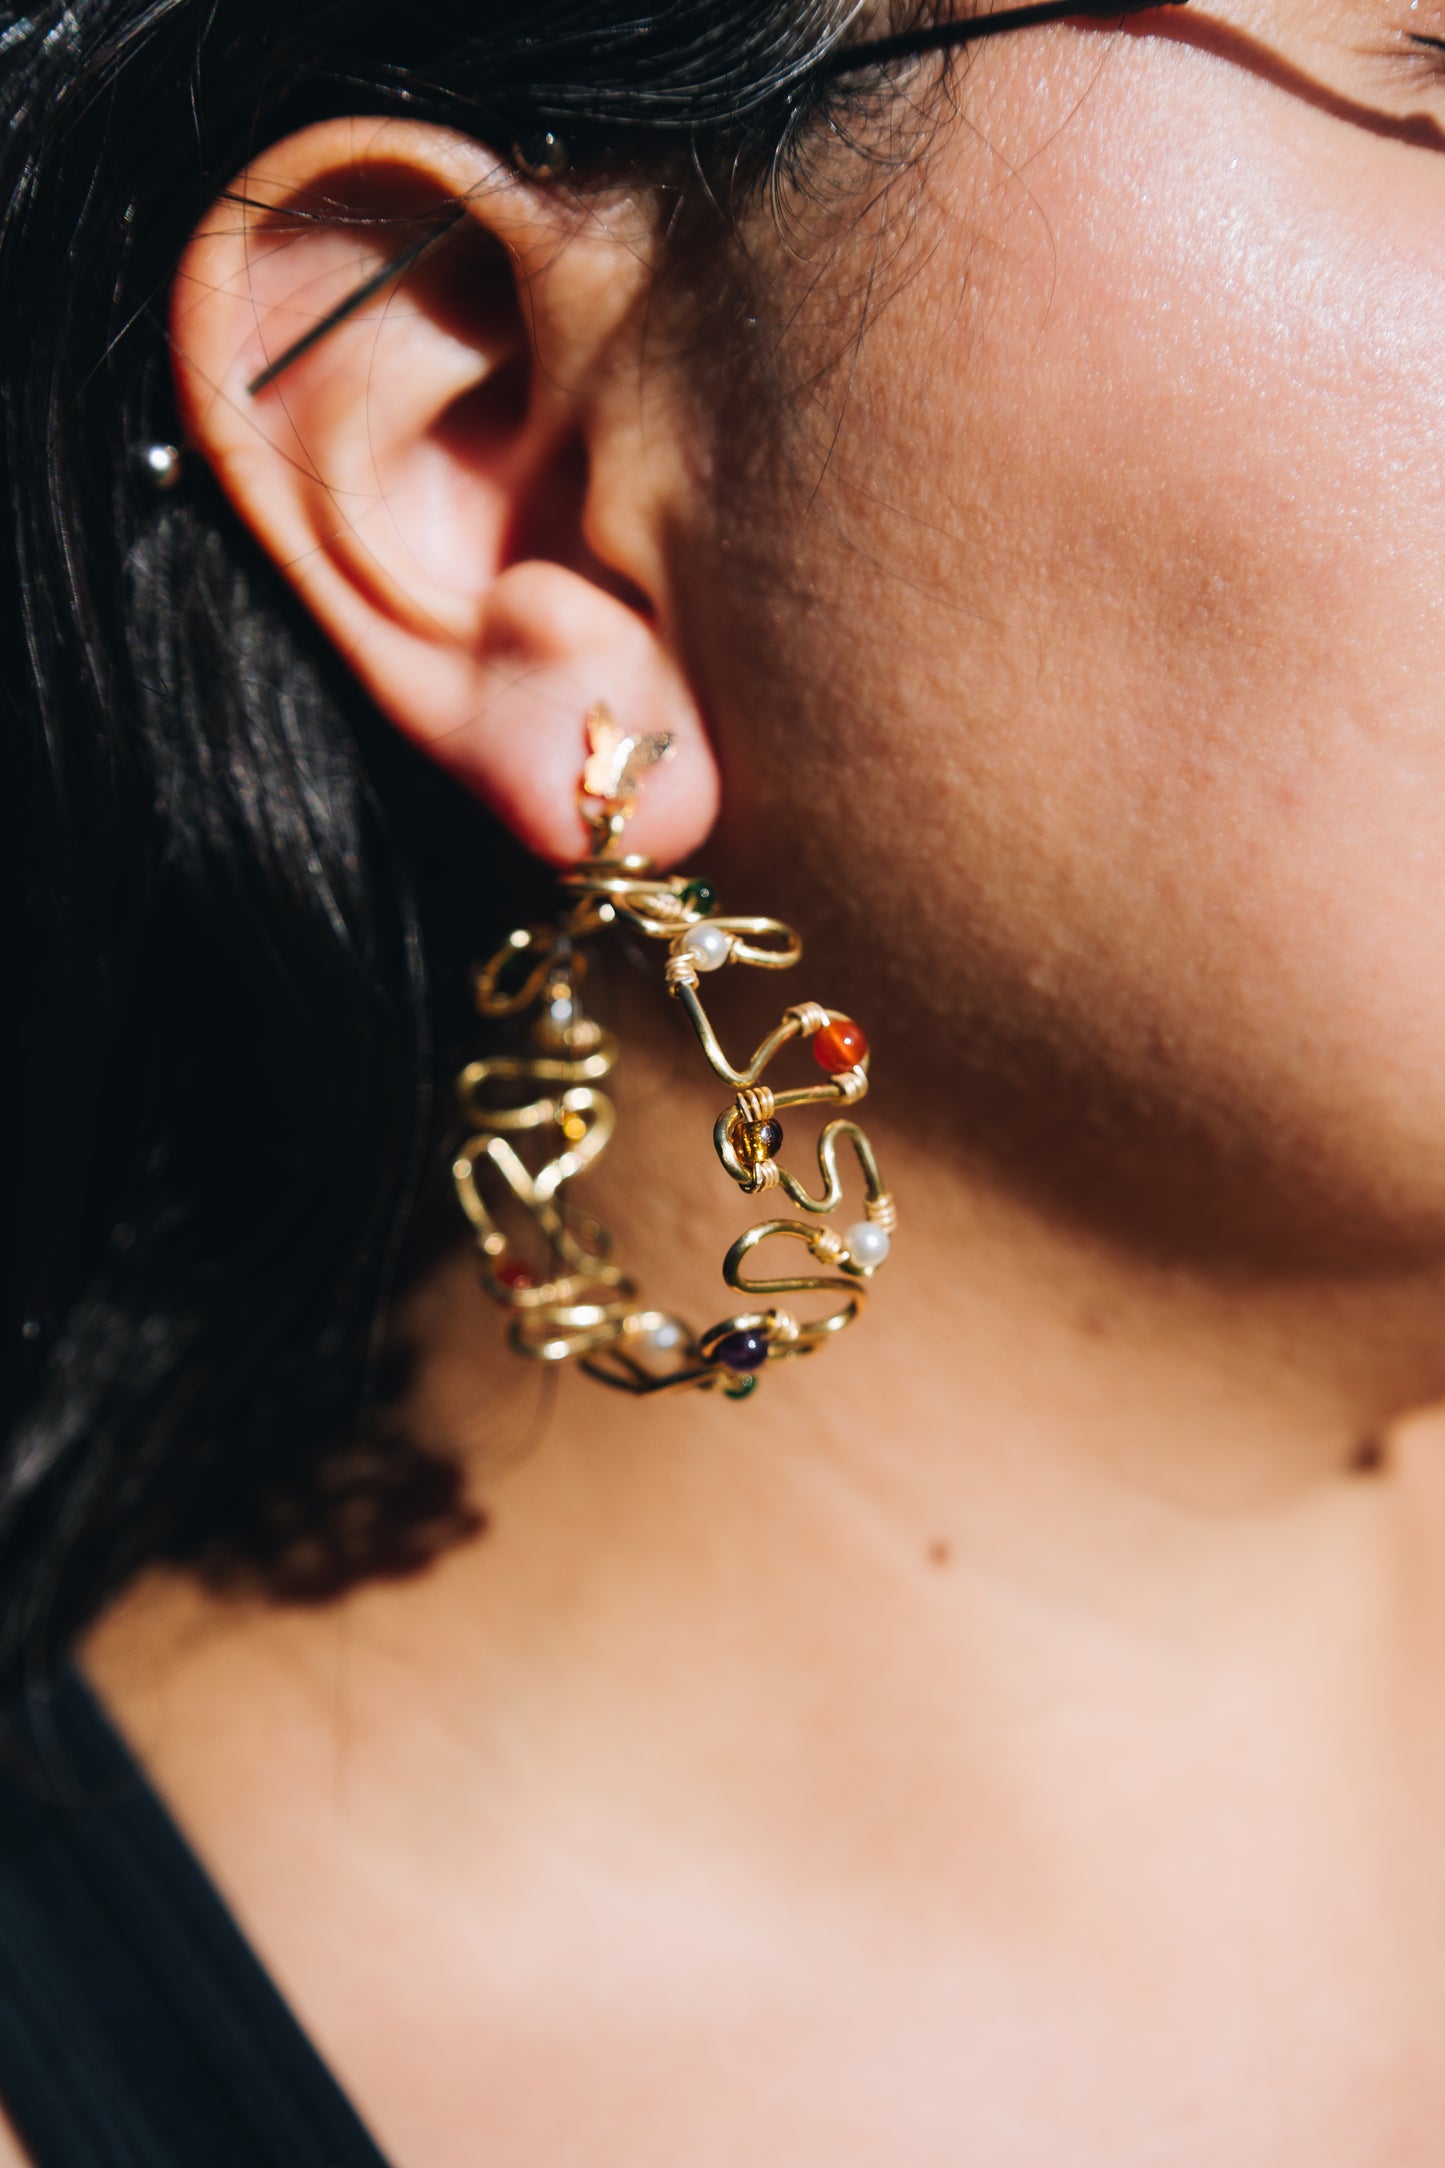 La Mariposa earrings